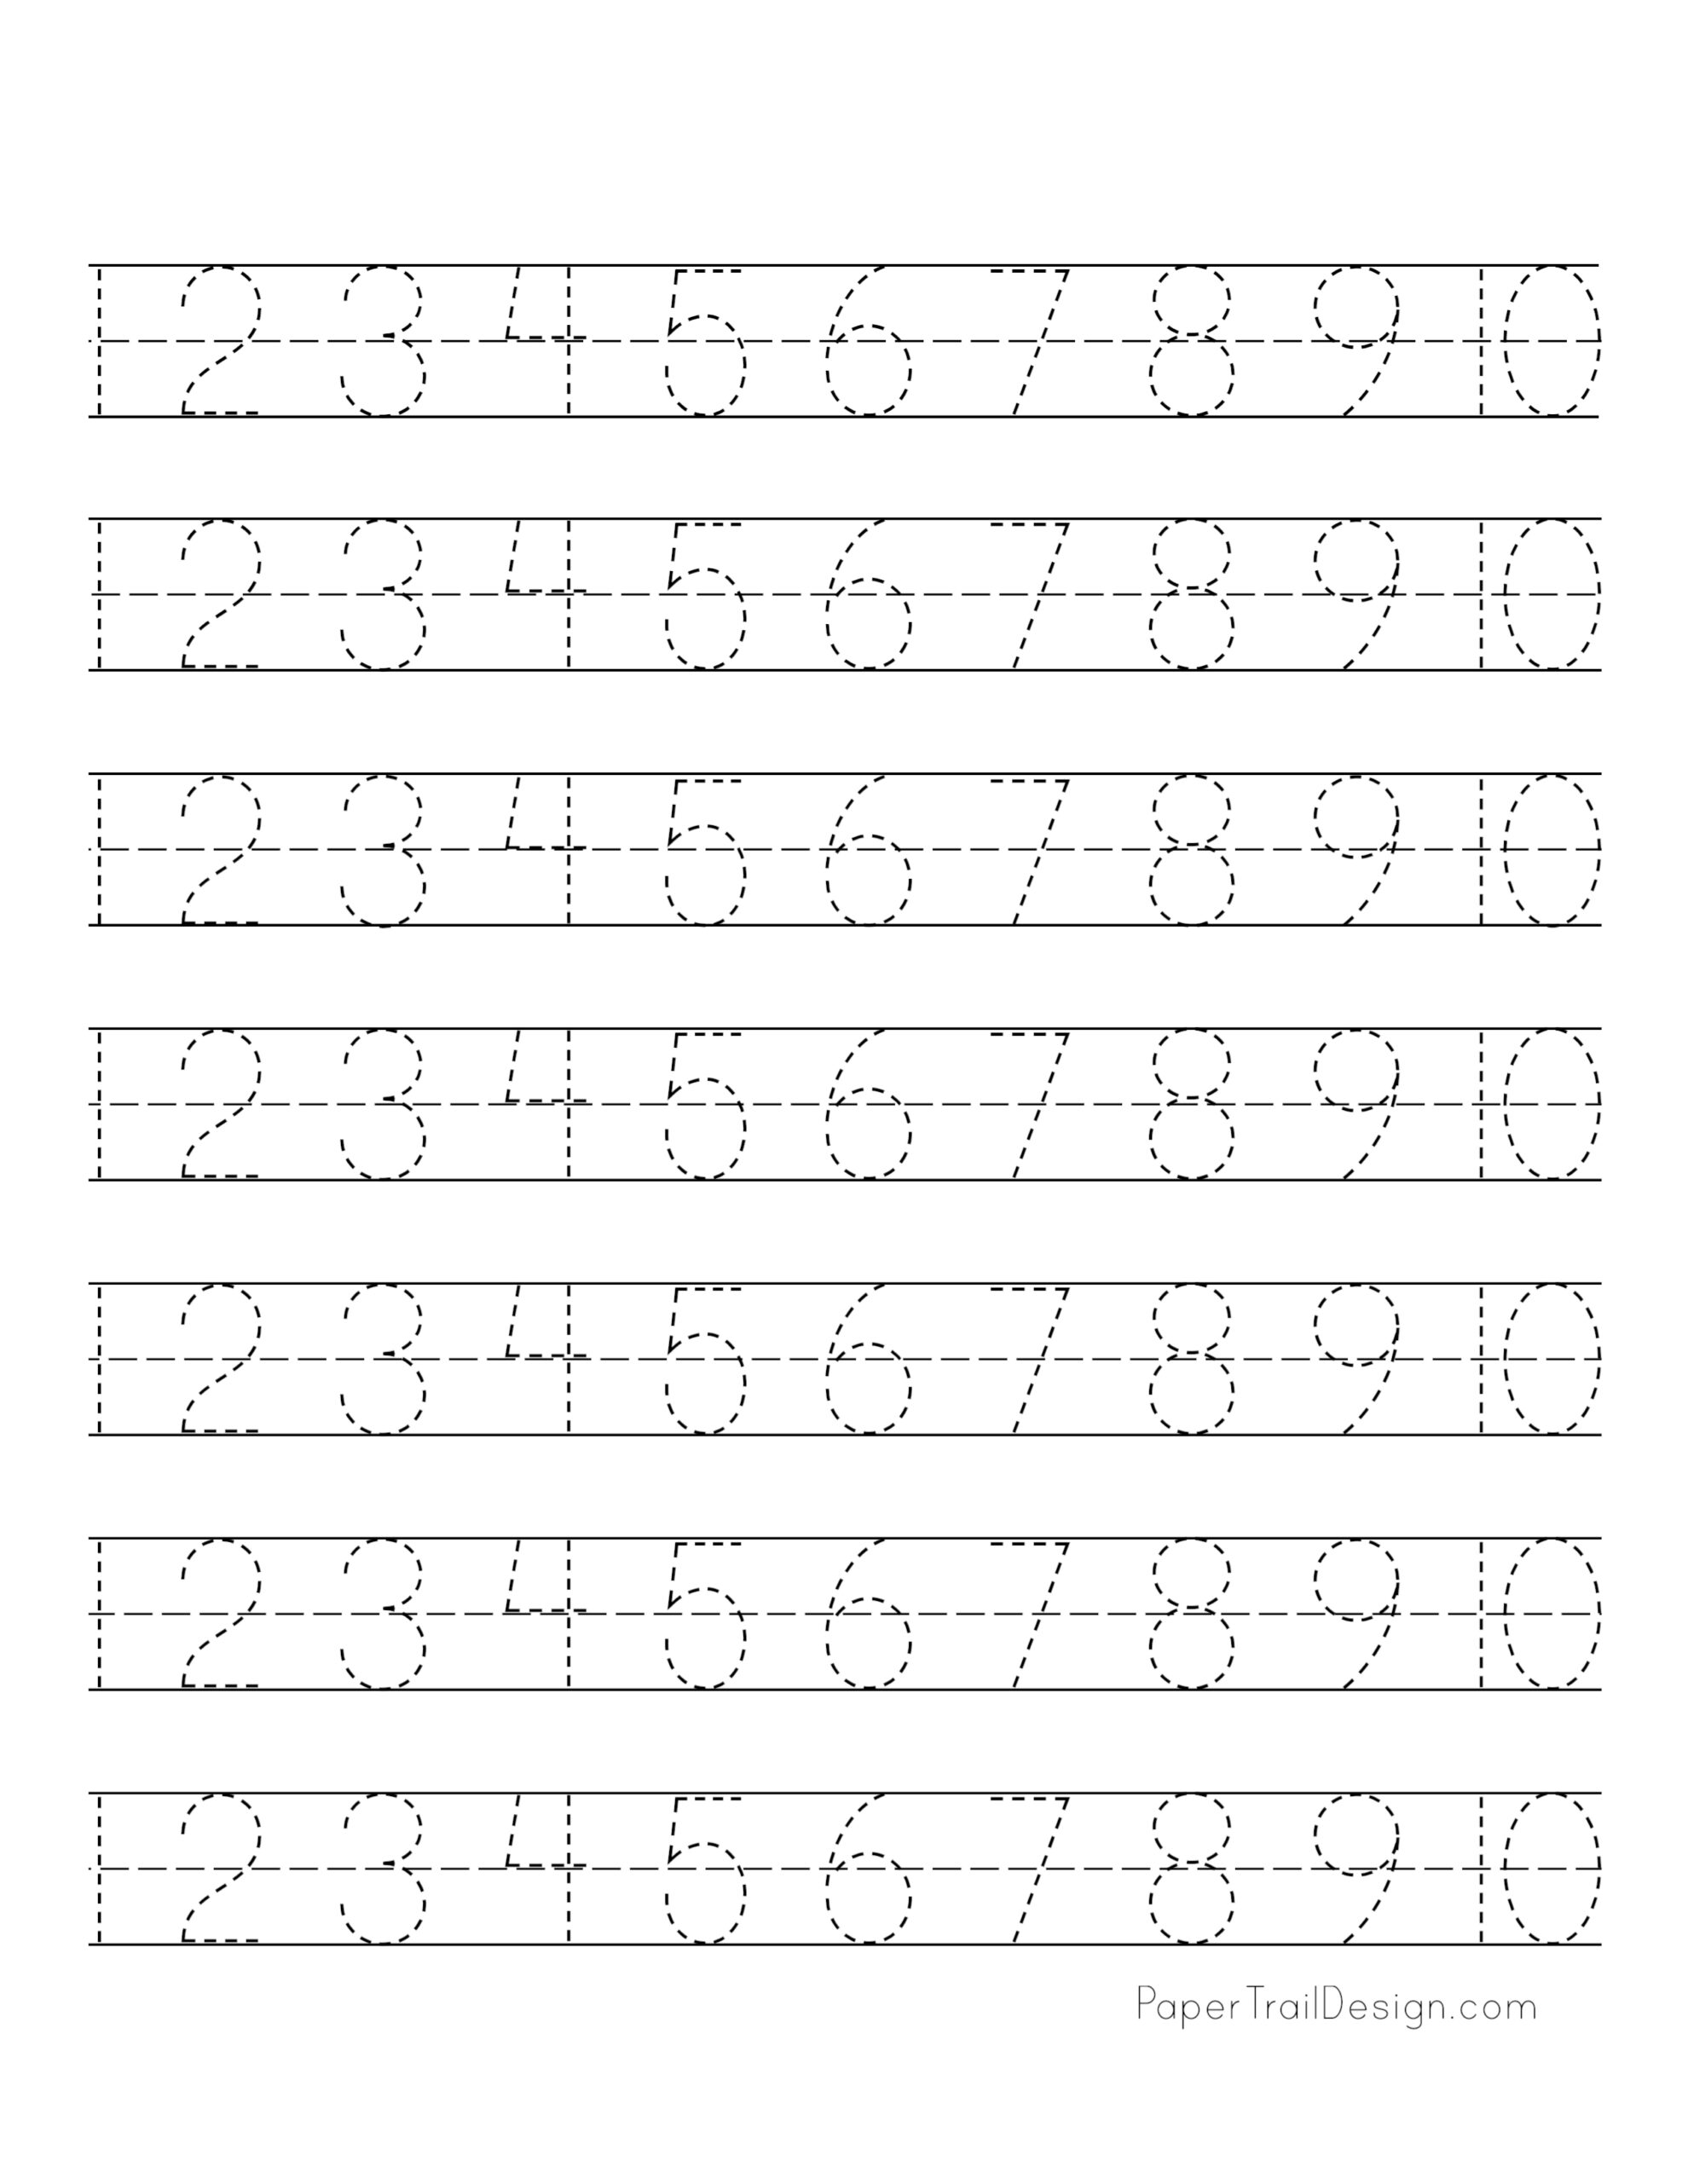 tracing-worksheets-numbers-1-20-tracing-worksheets-preschool